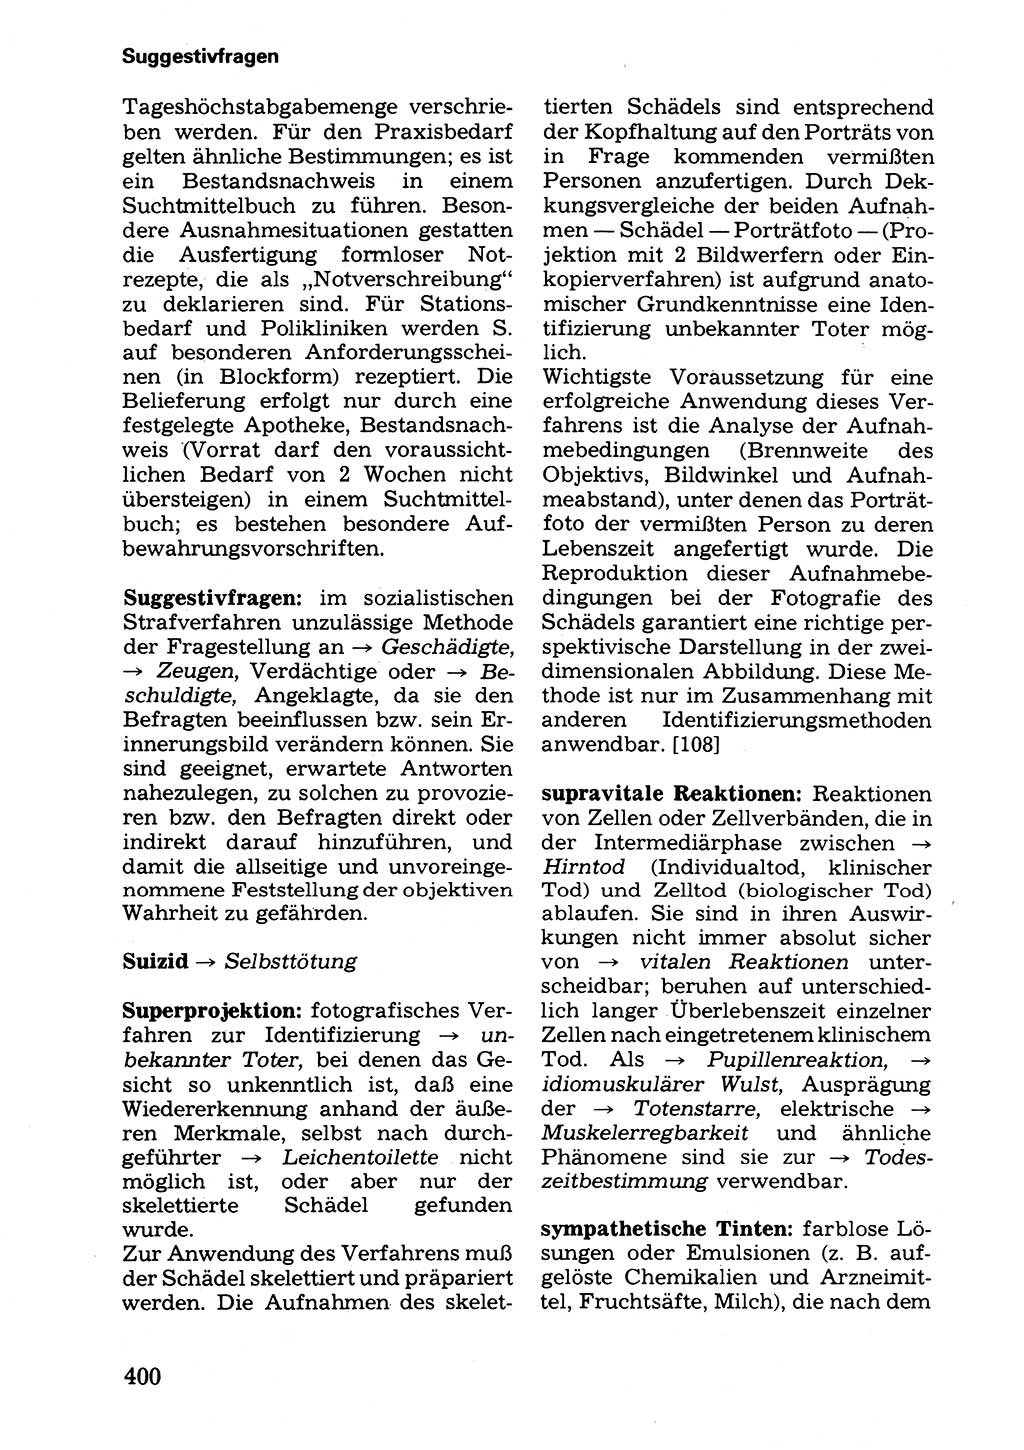 Wörterbuch der sozialistischen Kriminalistik [Deutsche Demokratische Republik (DDR)] 1981, Seite 400 (Wb. soz. Krim. DDR 1981, S. 400)